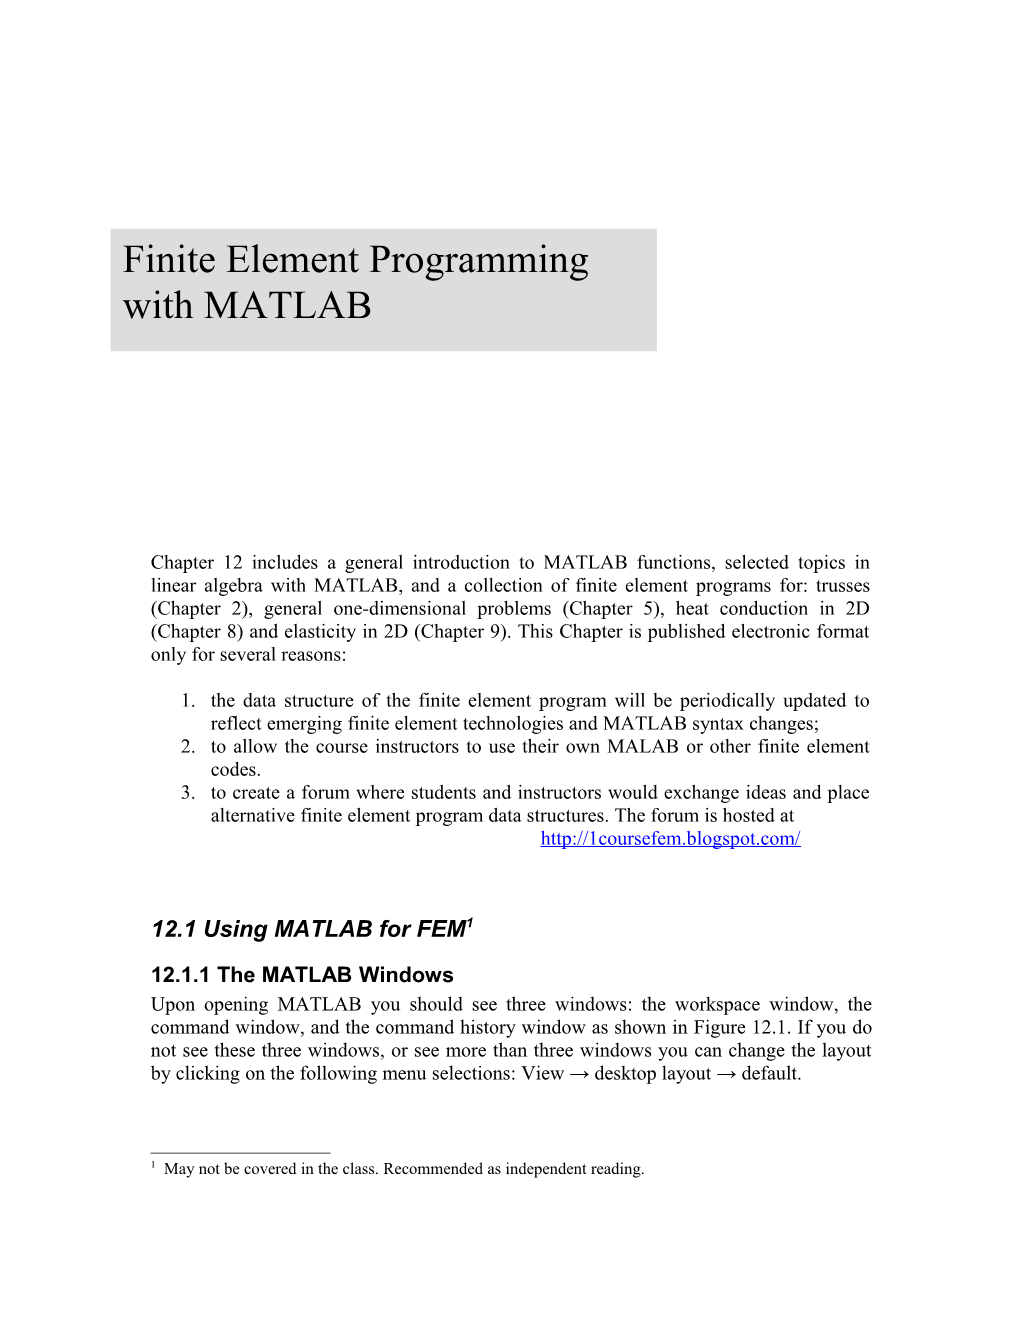 12.1 Using MATLAB for FEM 1